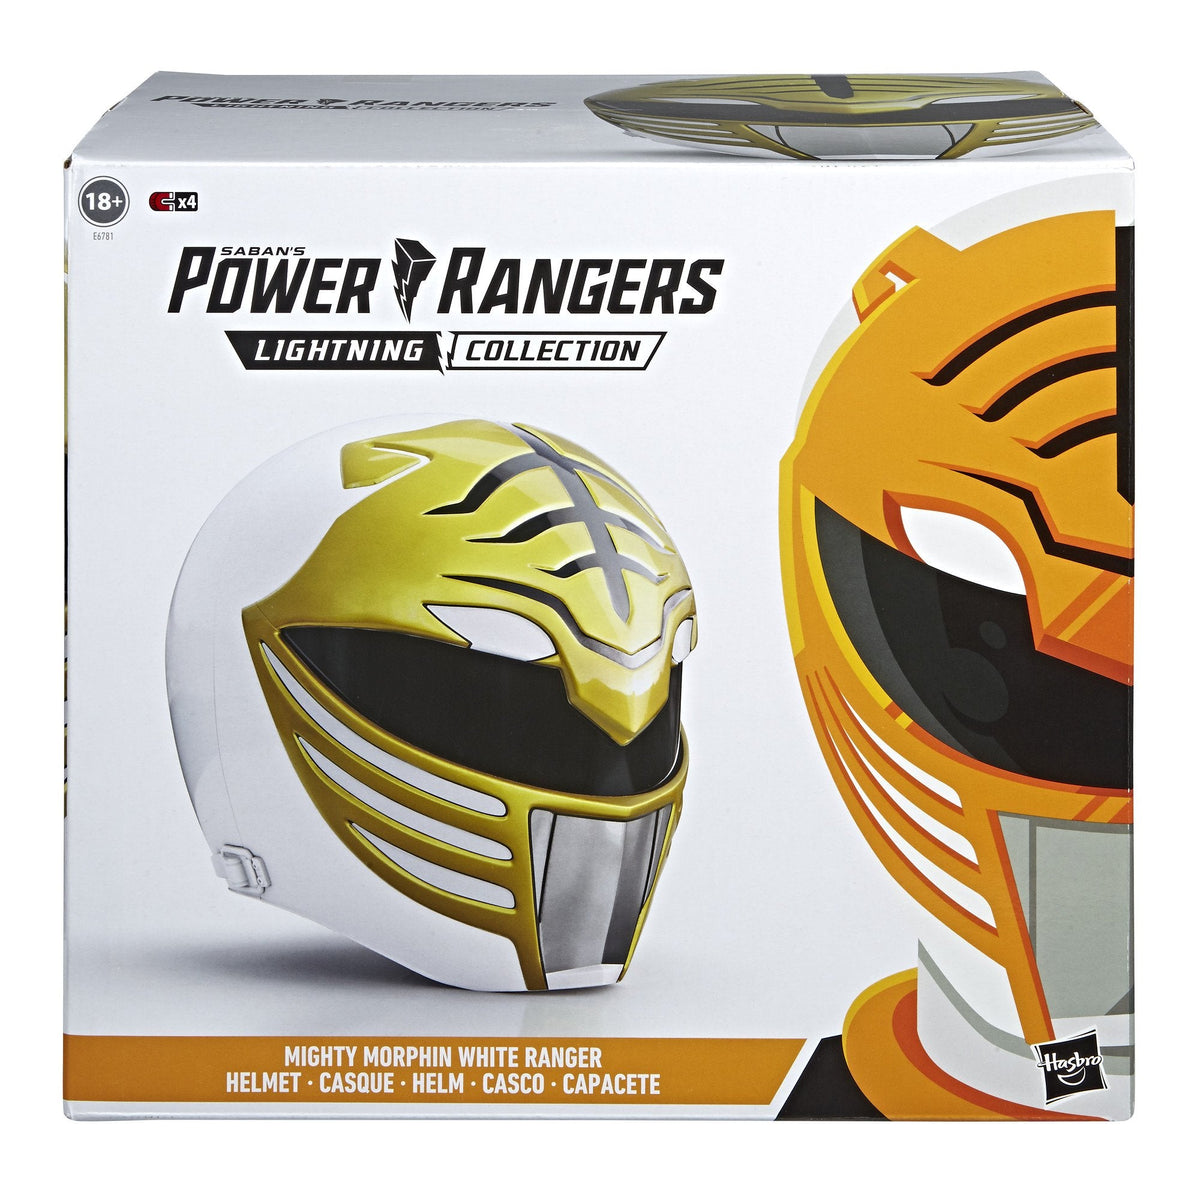 (IN STOCK) Hasbro - Power Rangers Lightning Collection - Mighty Morphin White Ranger Helmet (Reissue) - Marvelous Toys